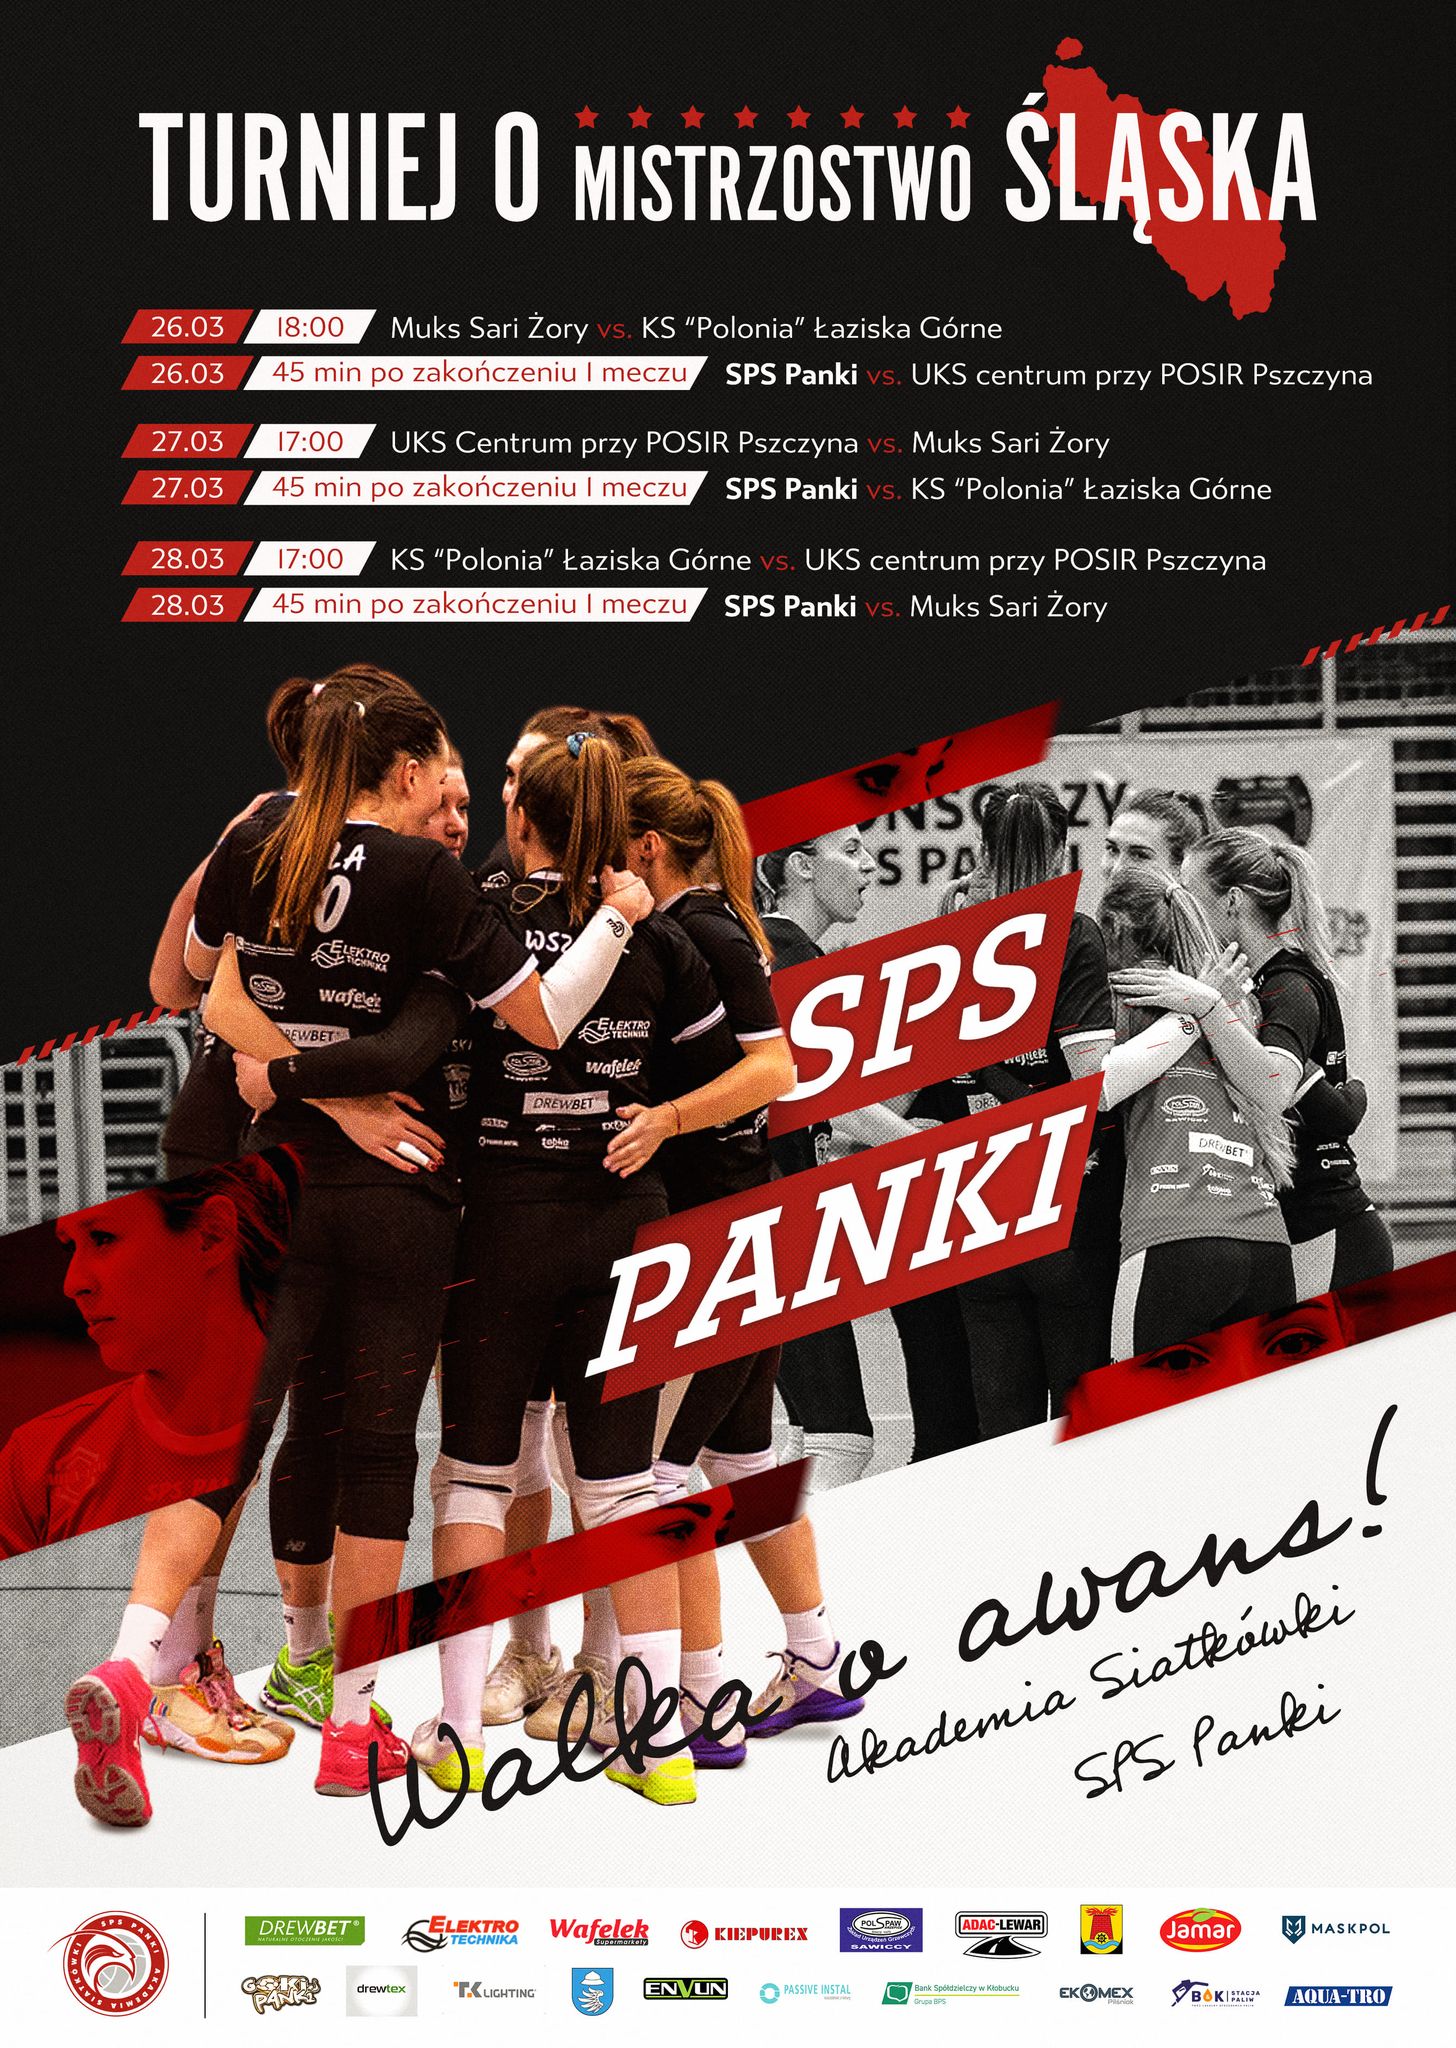 Akademia Siatkówki SPS Panki organizuje turniej finałowy o mistrzostwo 1 ligi kobiet i awans 6